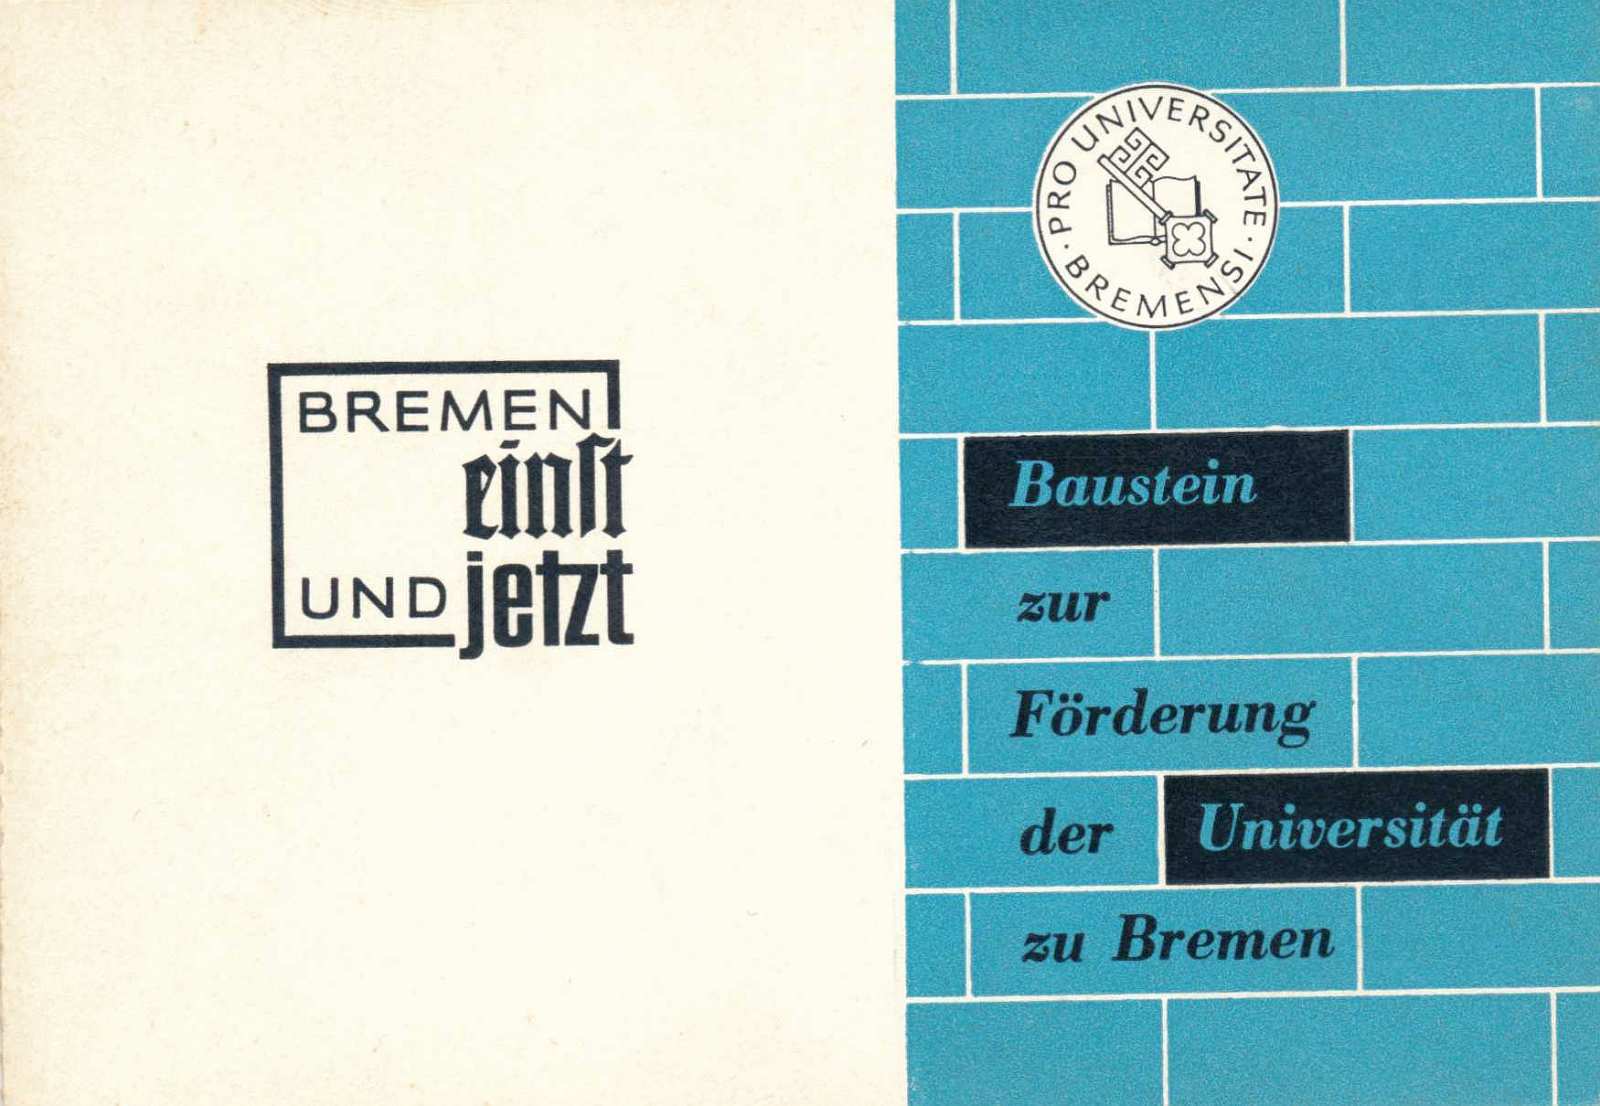 Baustein-Postkarte zur Förderung der Universität zu Bremen.